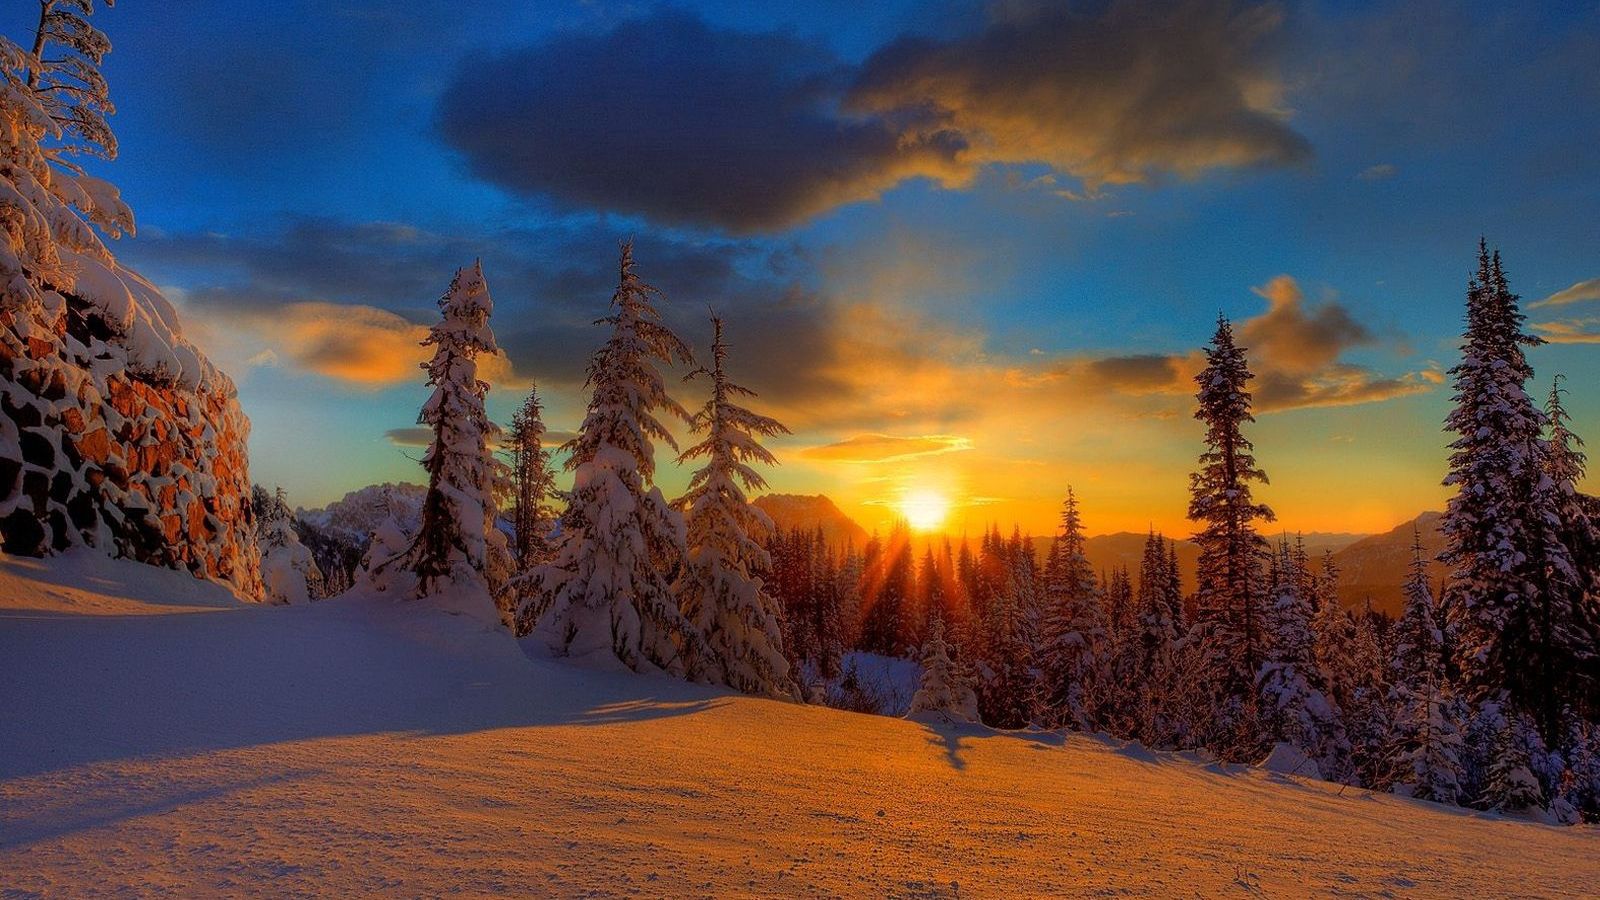 Download wallpaper 1600x900 sun, decline, evening, snow, trees, fir ...